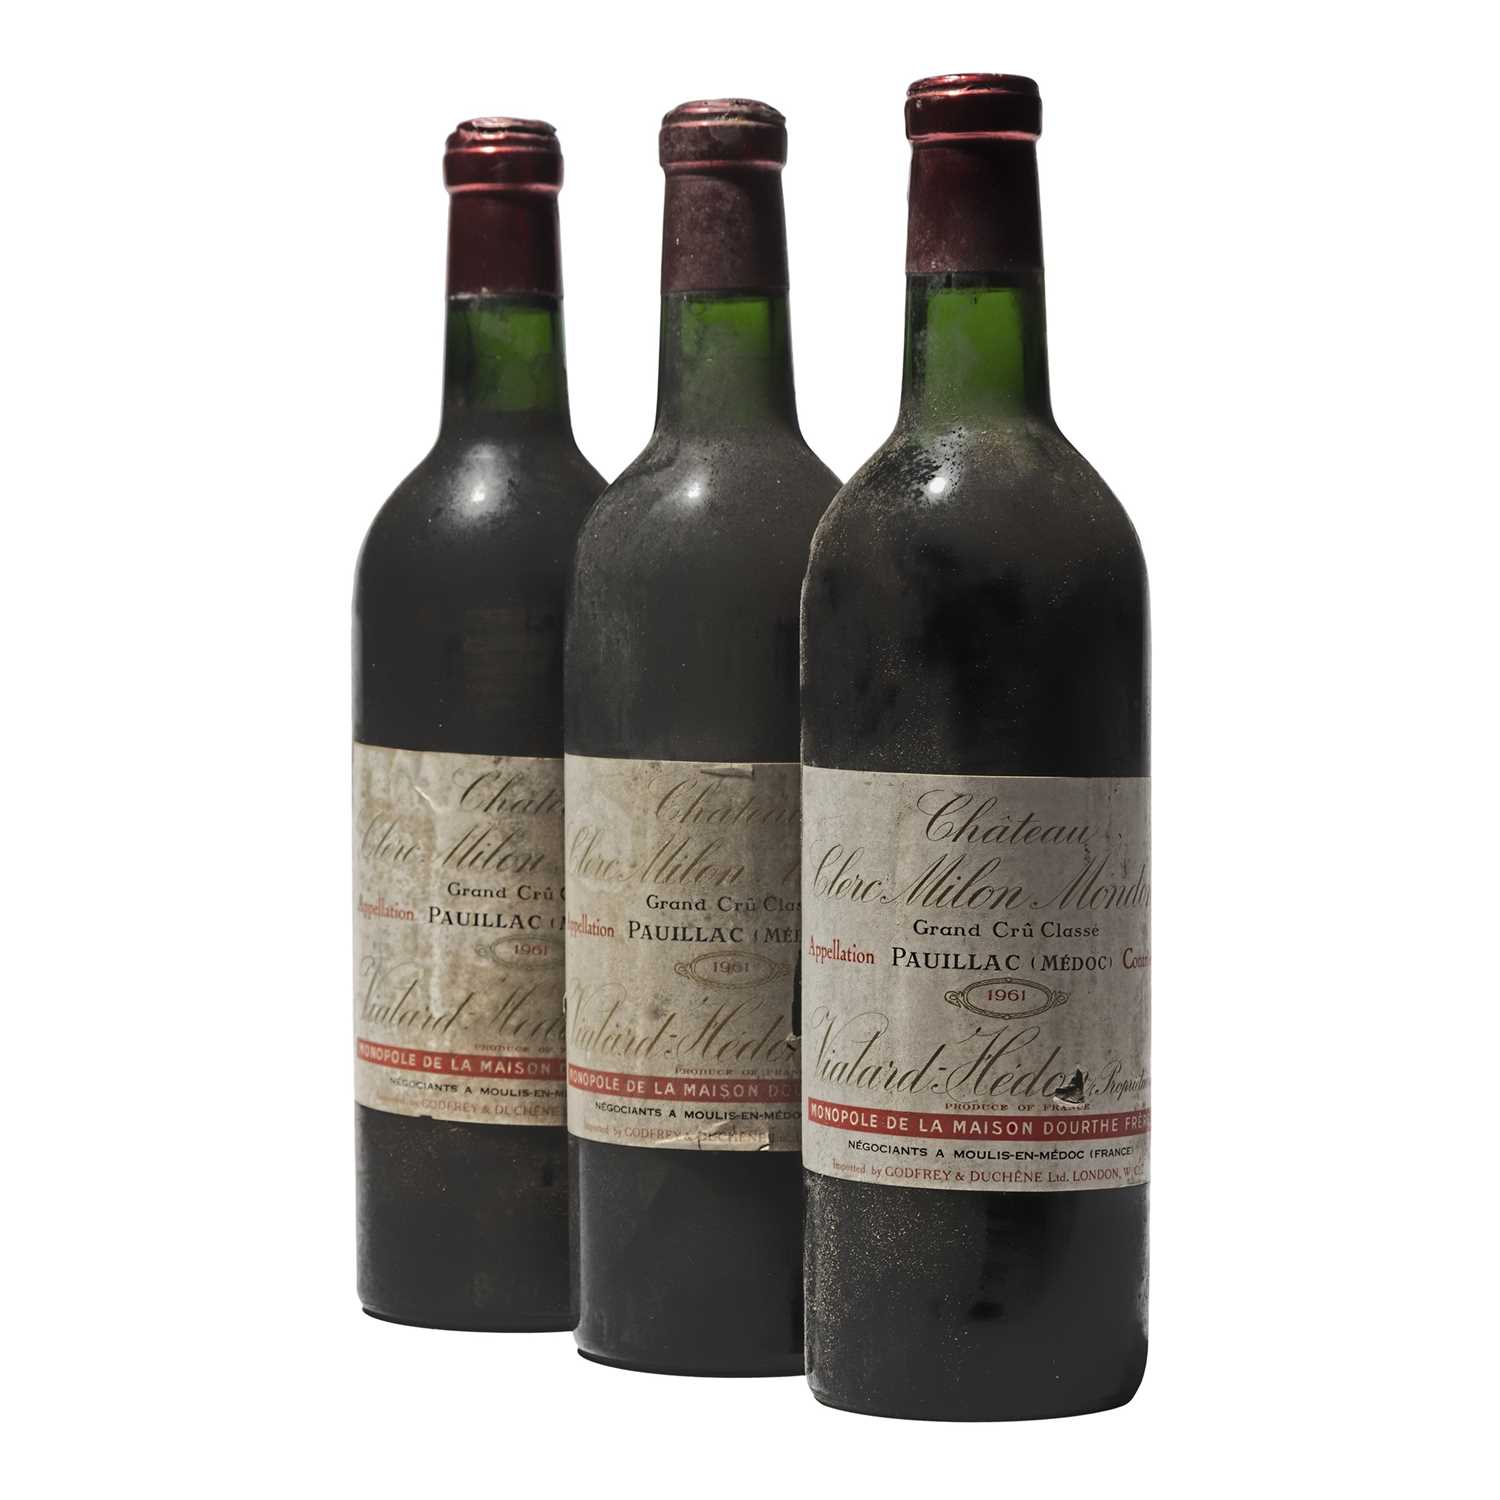 Lot 12 - 5 bottles 1961 Ch Clerc Milon Mondon